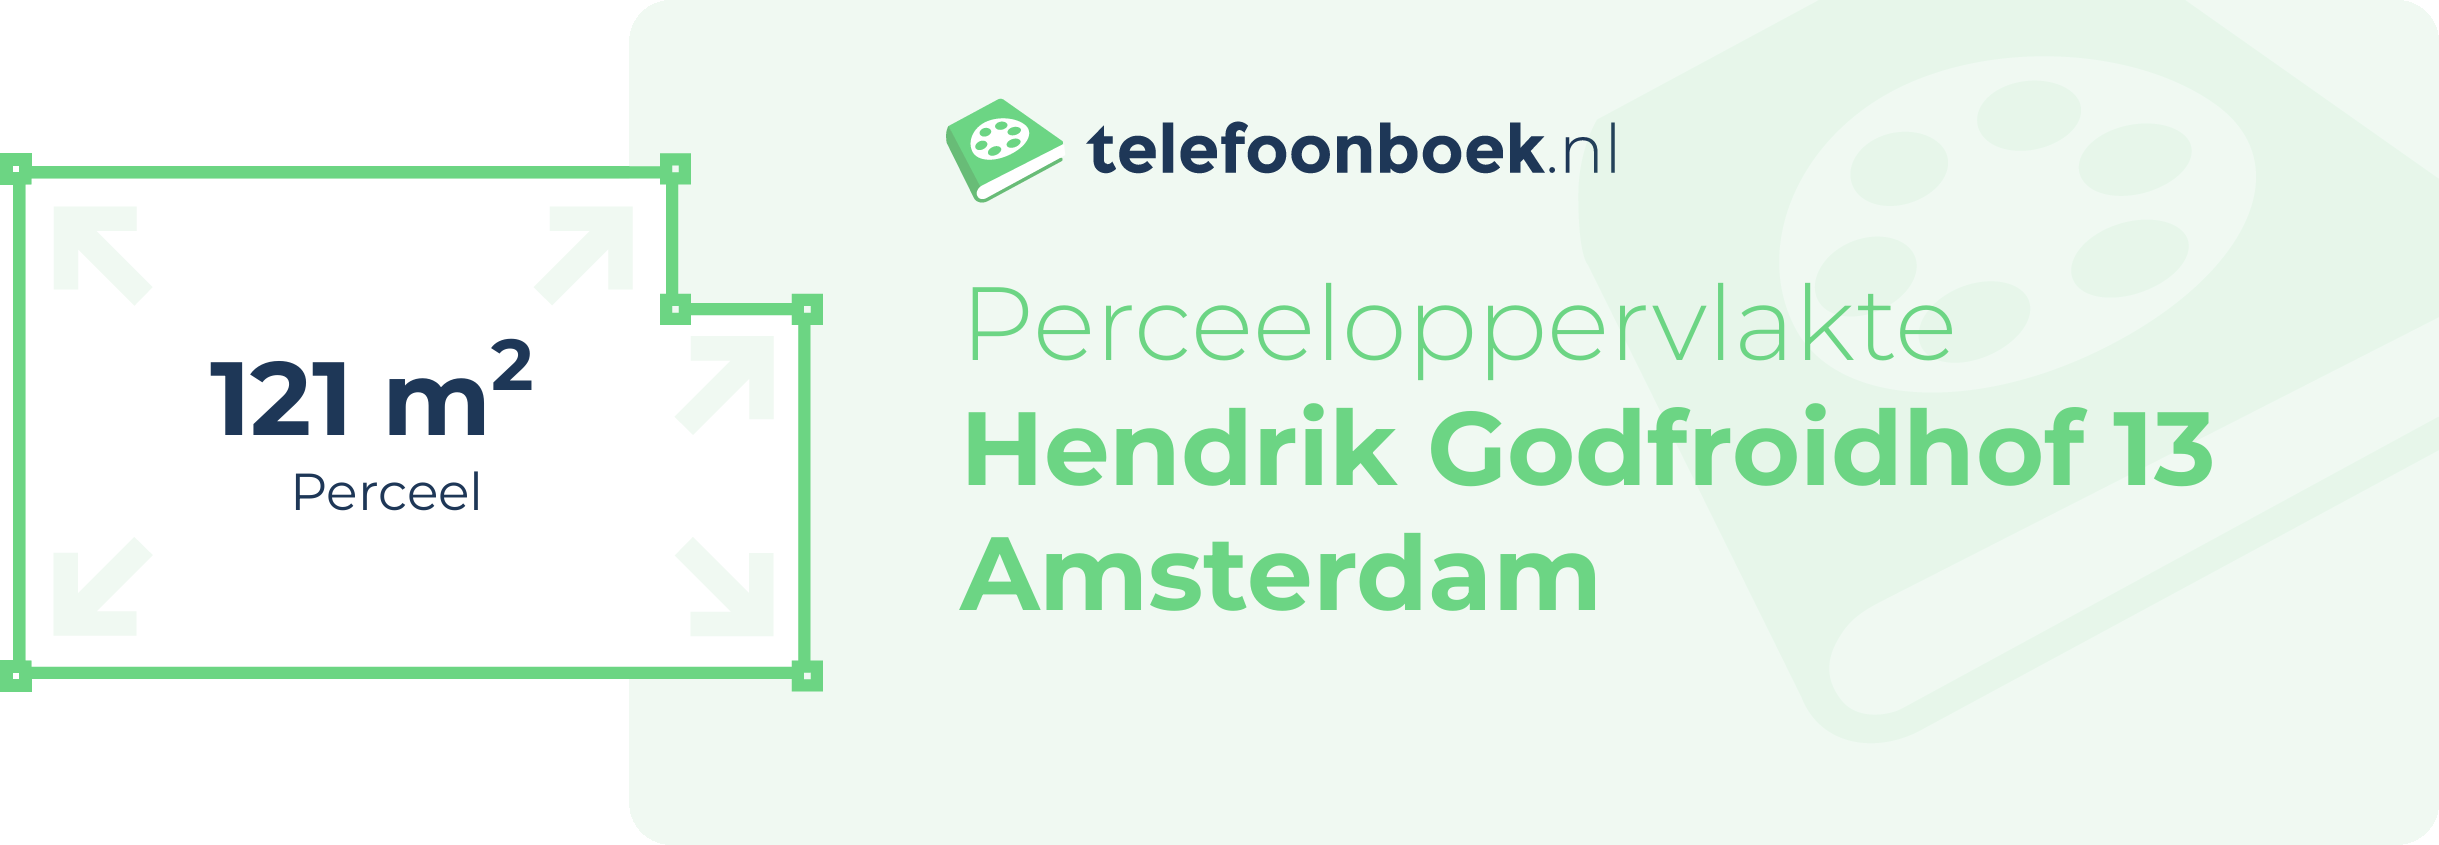 Perceeloppervlakte Hendrik Godfroidhof 13 Amsterdam